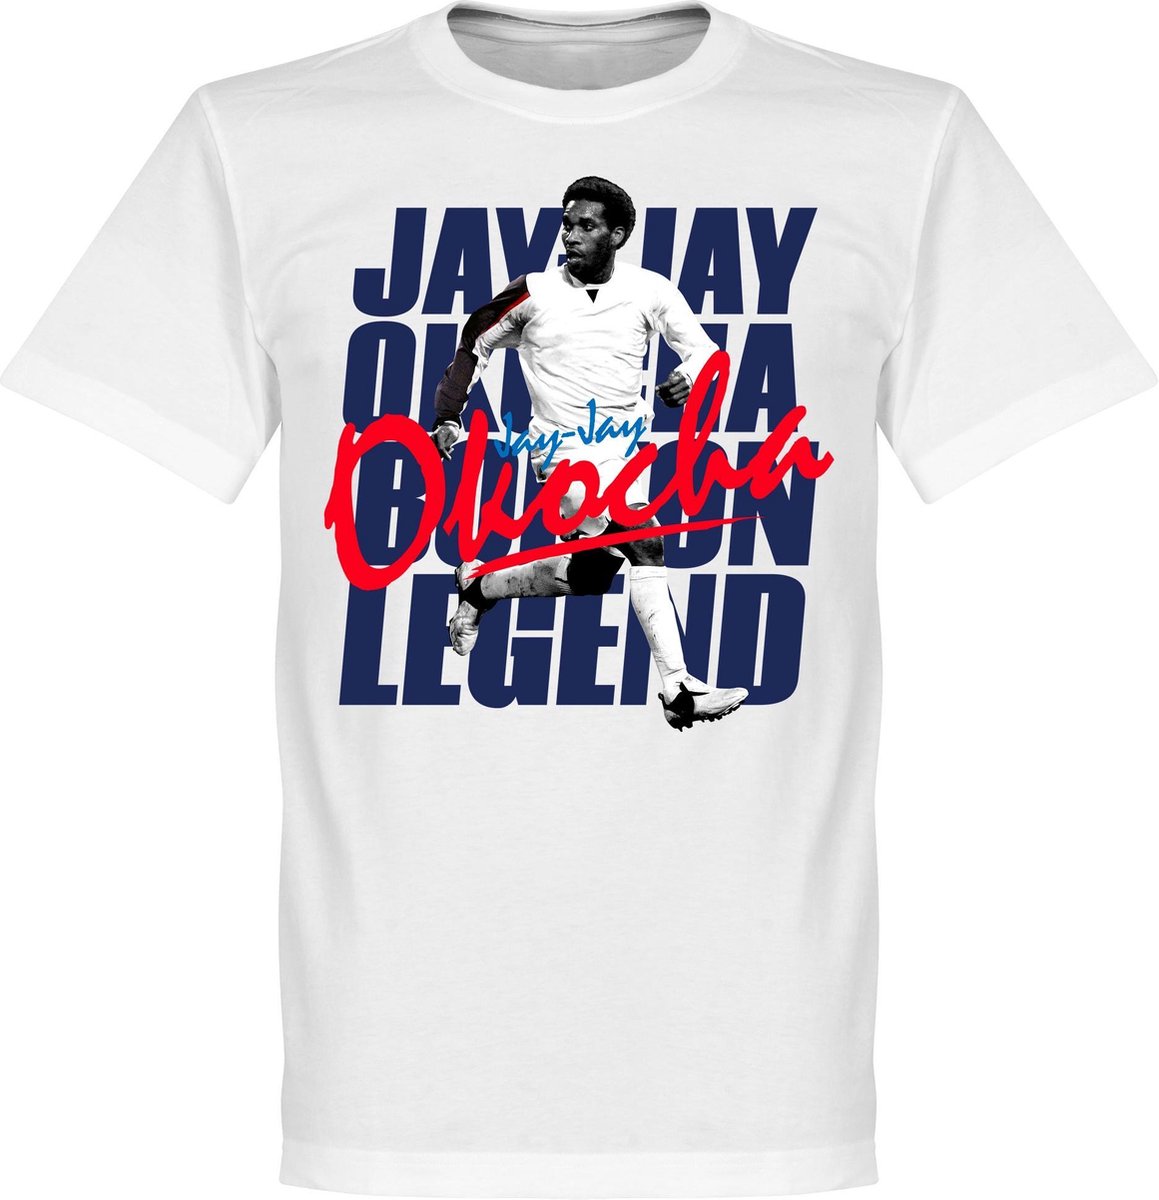 Jay Jay Okocha Legend T-Shirt - XXL